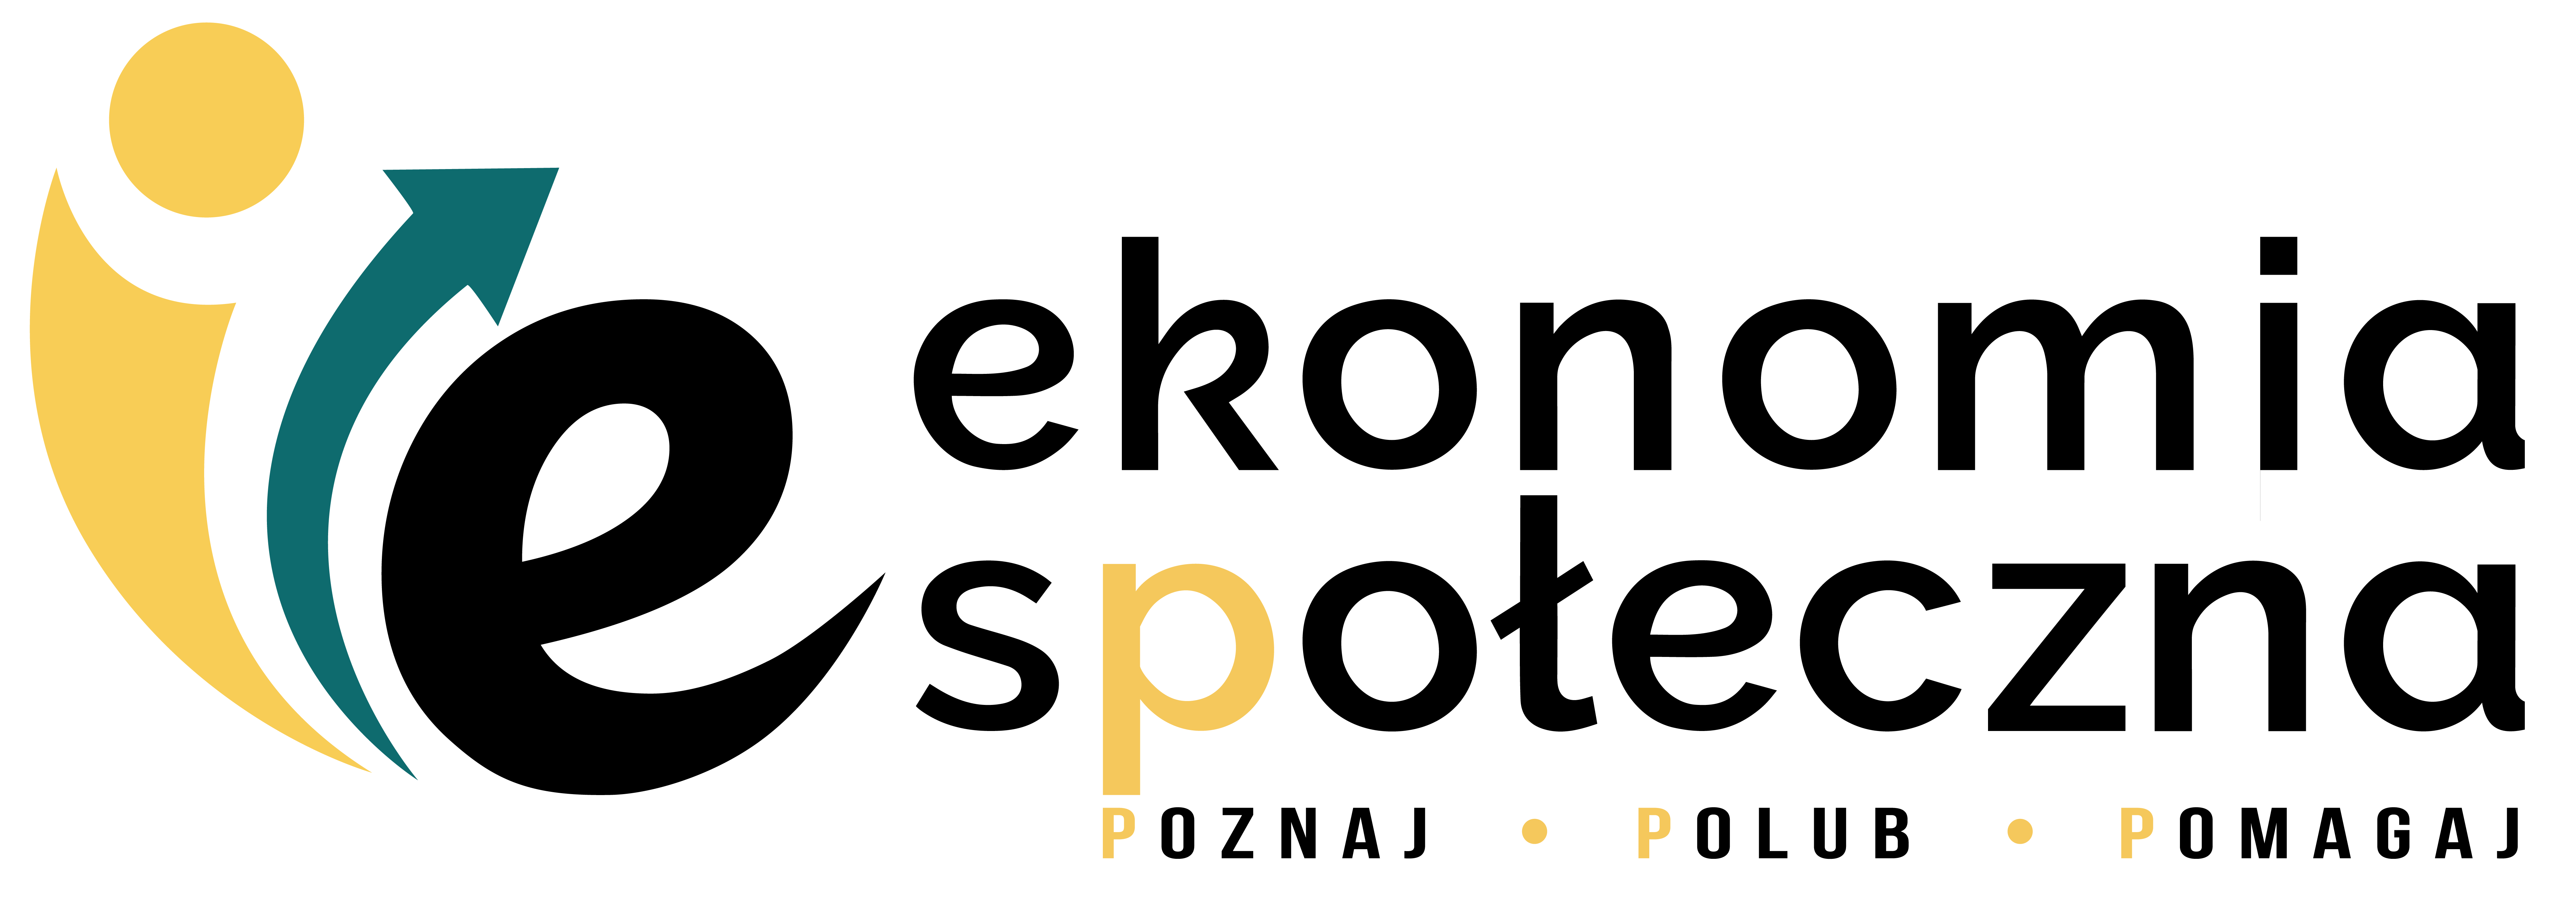 Logo Ekonomia Społeczna- Poznaj, Polub, Pomagaj